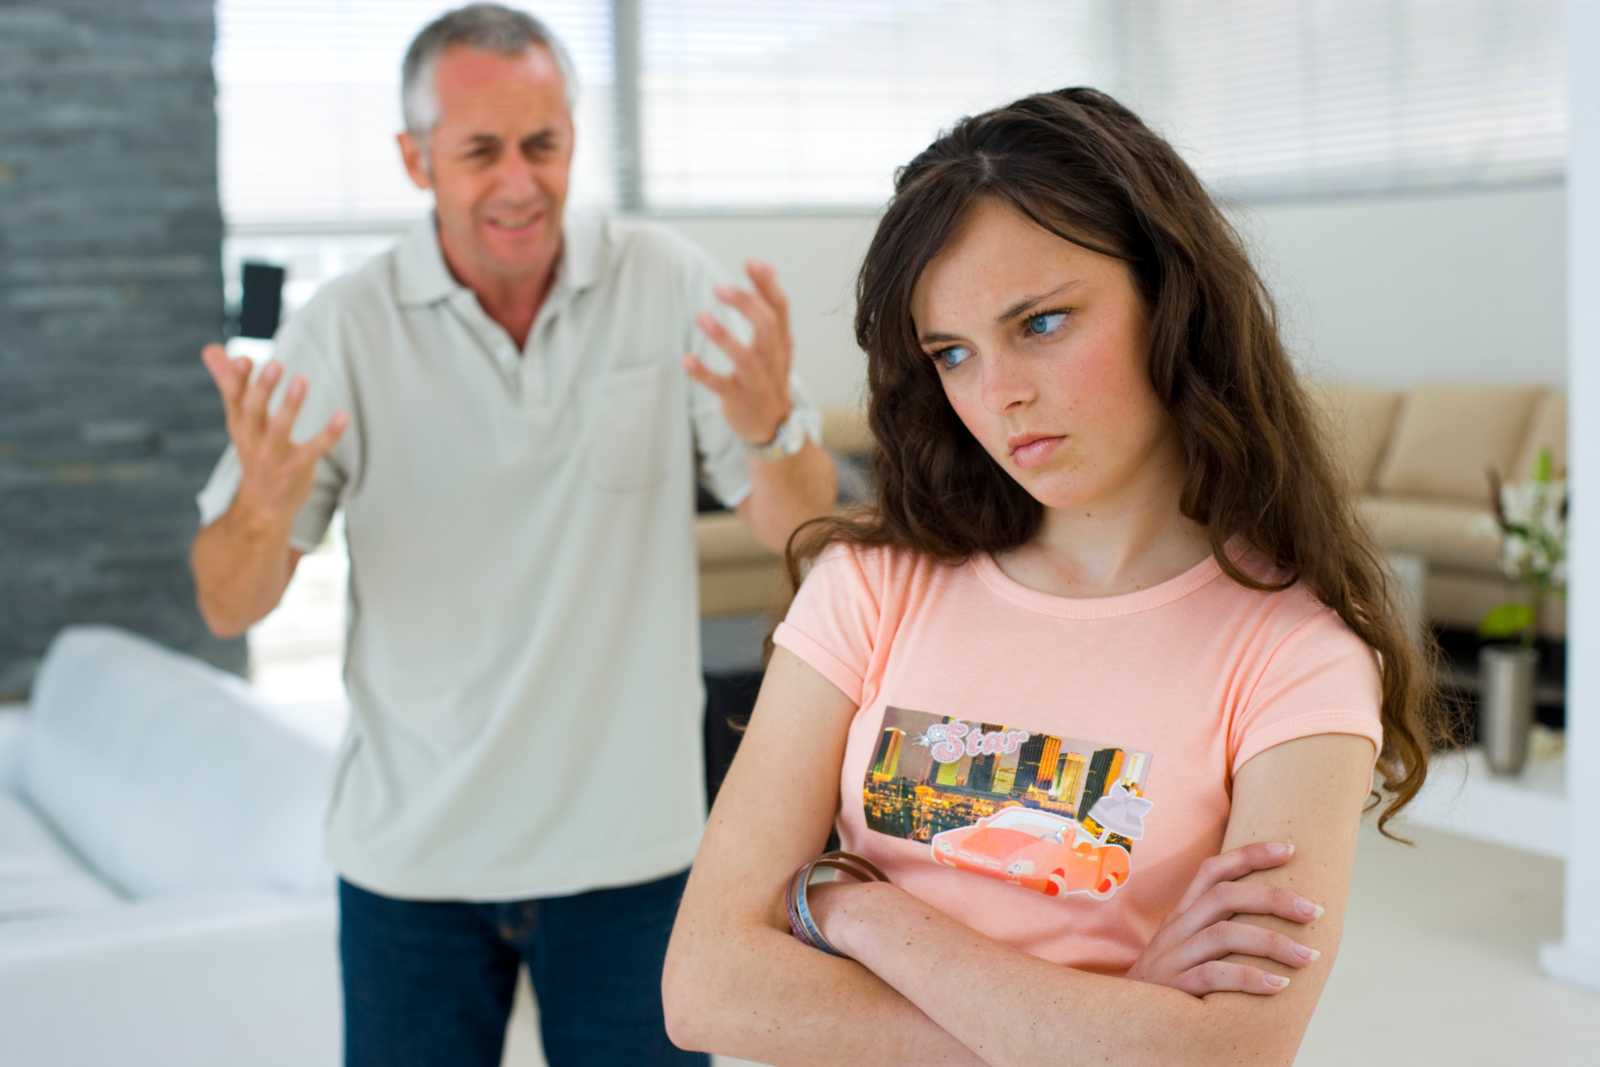 Как помочь подростку наладить отношения с отчимом